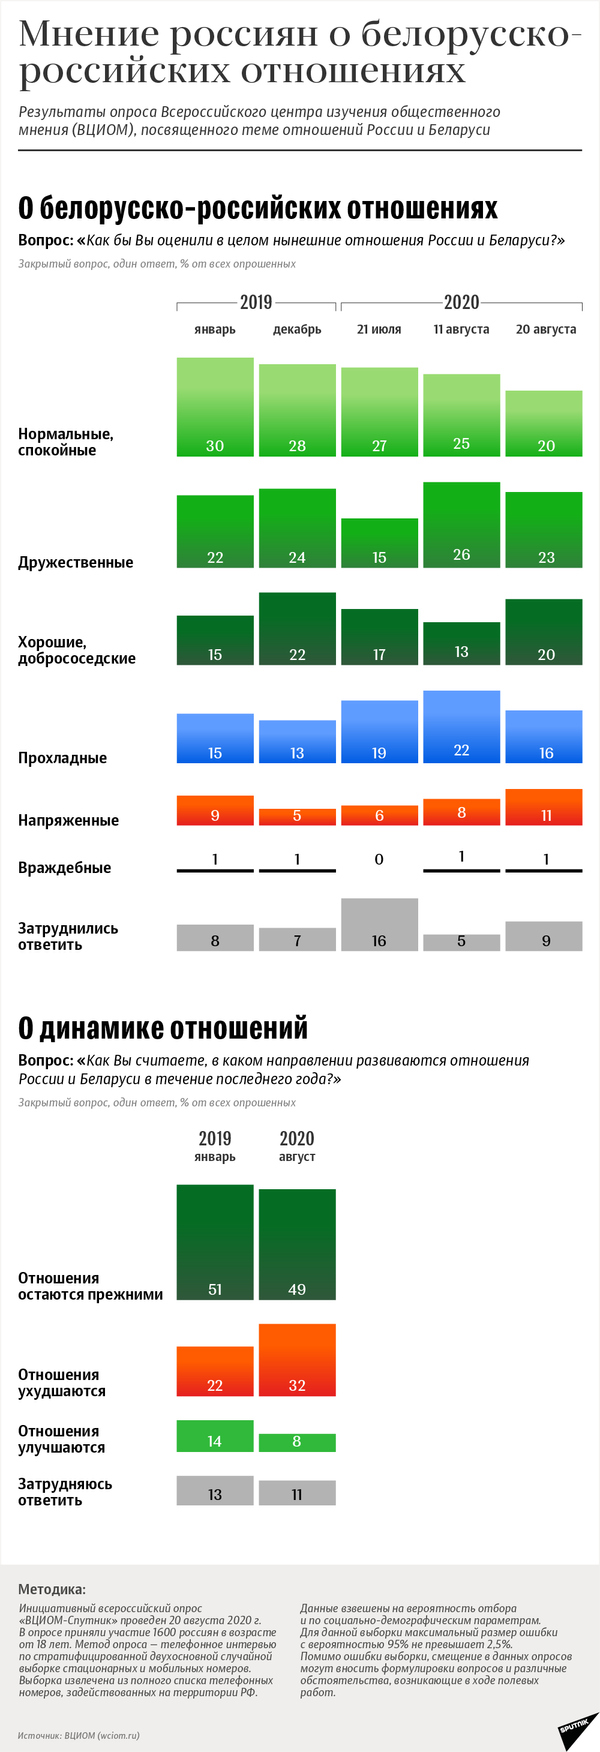 Мнение россиян о белорусско-российских отношениях | Инфографика sputnik.by - Sputnik Беларусь